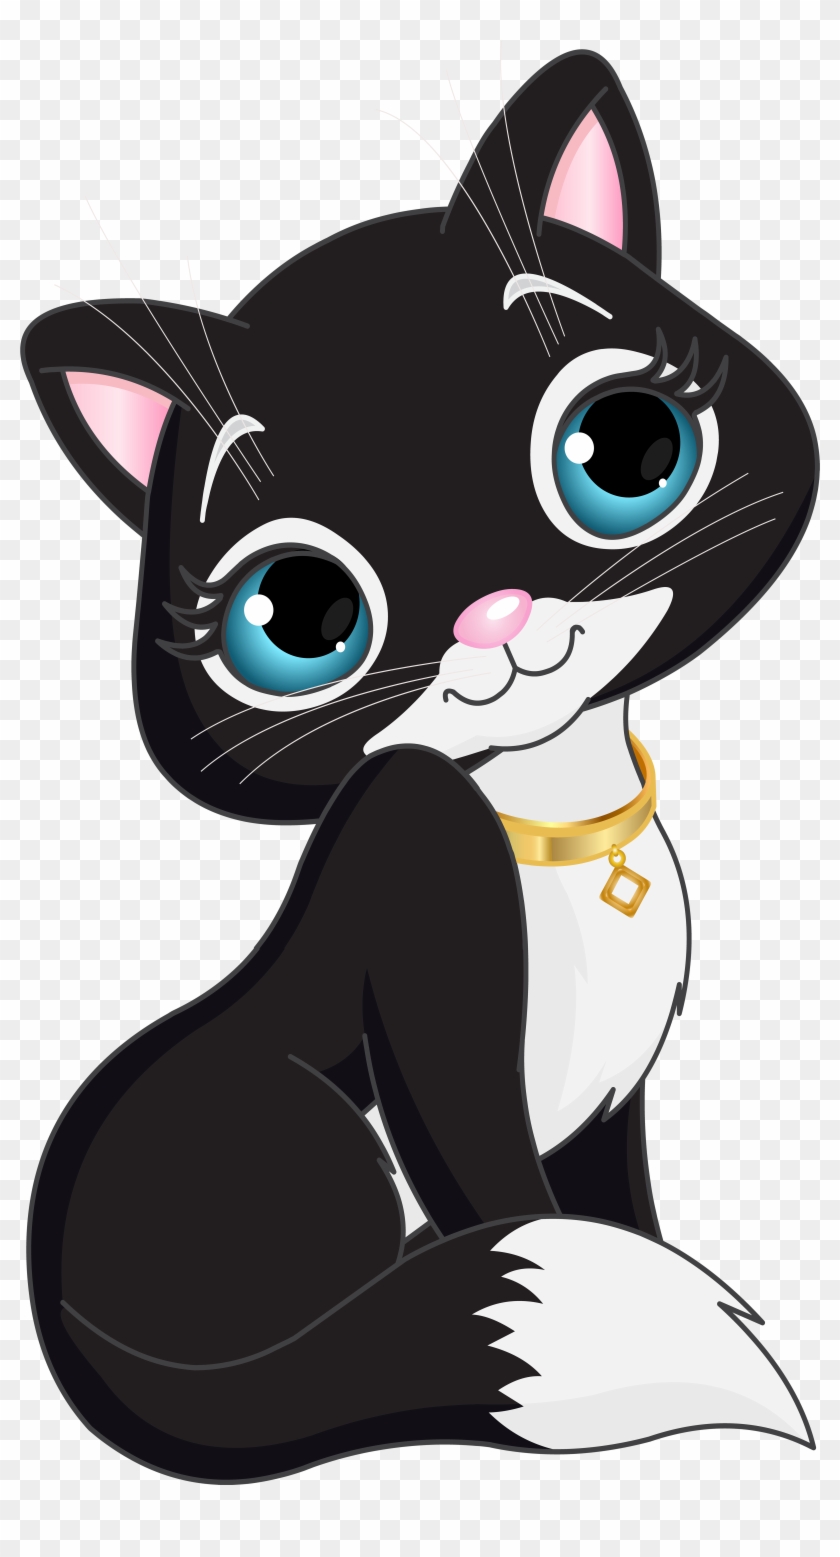 Black Kitten Cartoon Transparent Clip Art - Kitten Clipart Transparent #1244255